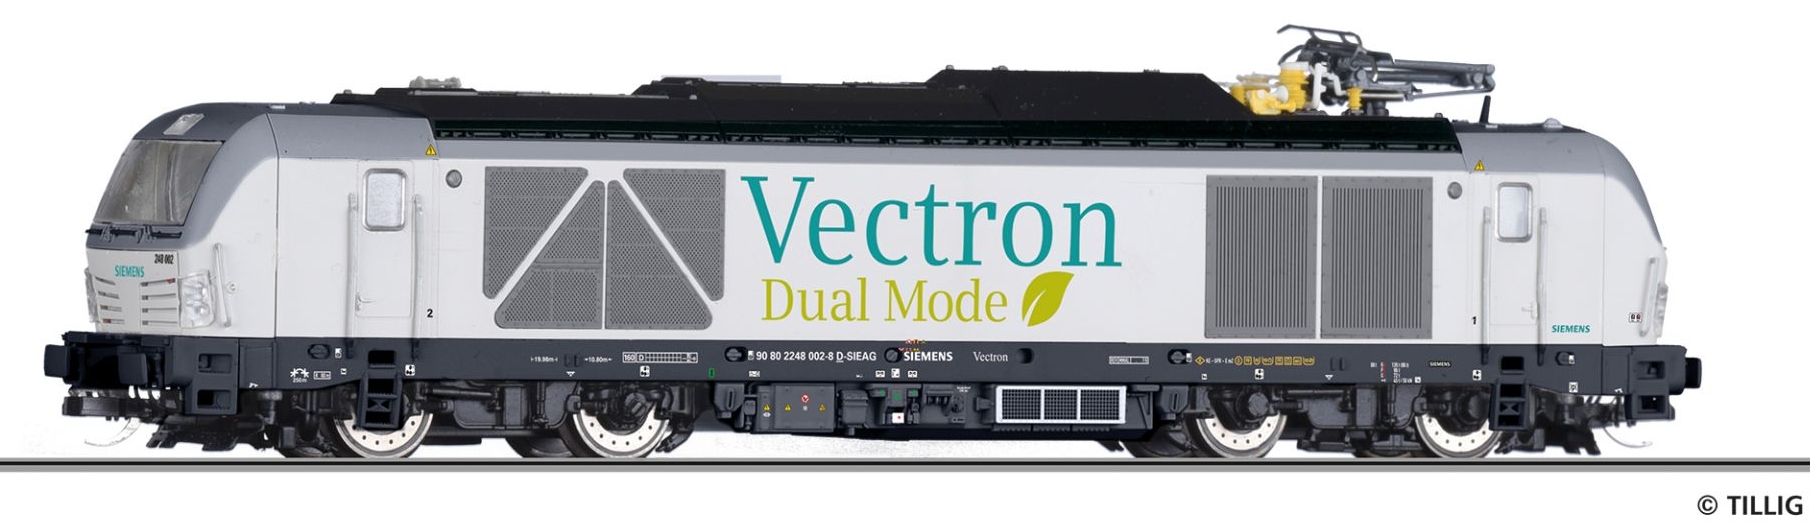 DualMode Vectron